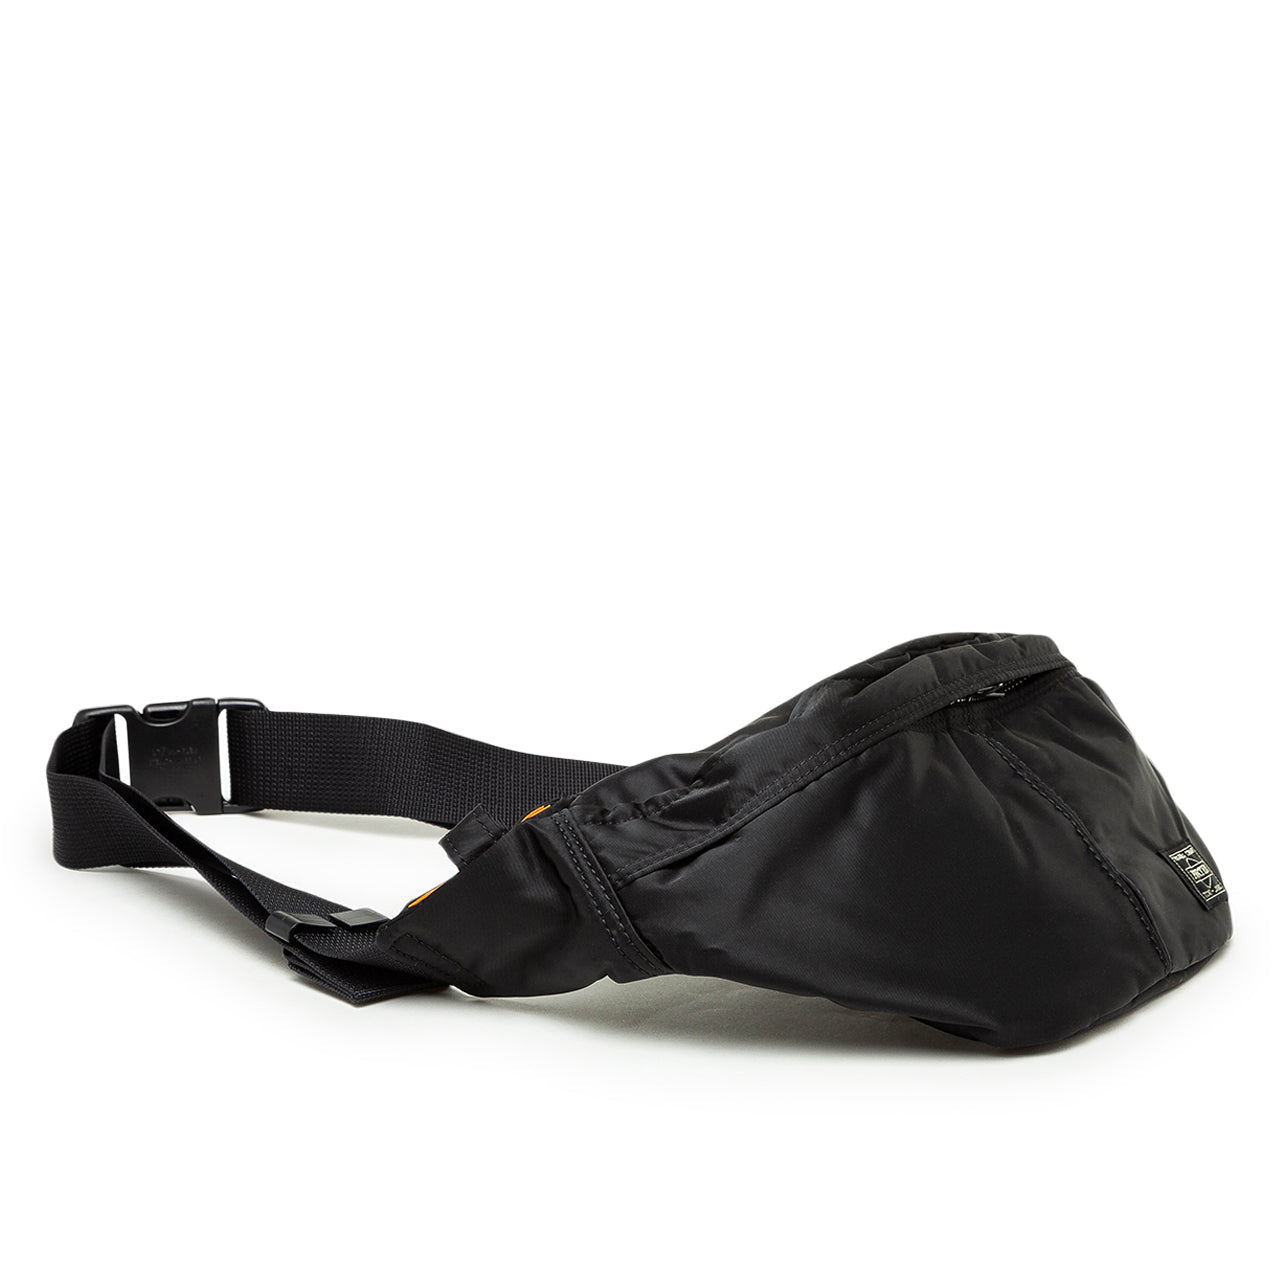 Porter - Yoshida & Co. Tanker Waist Bag (S) - Black - 622-76629-10